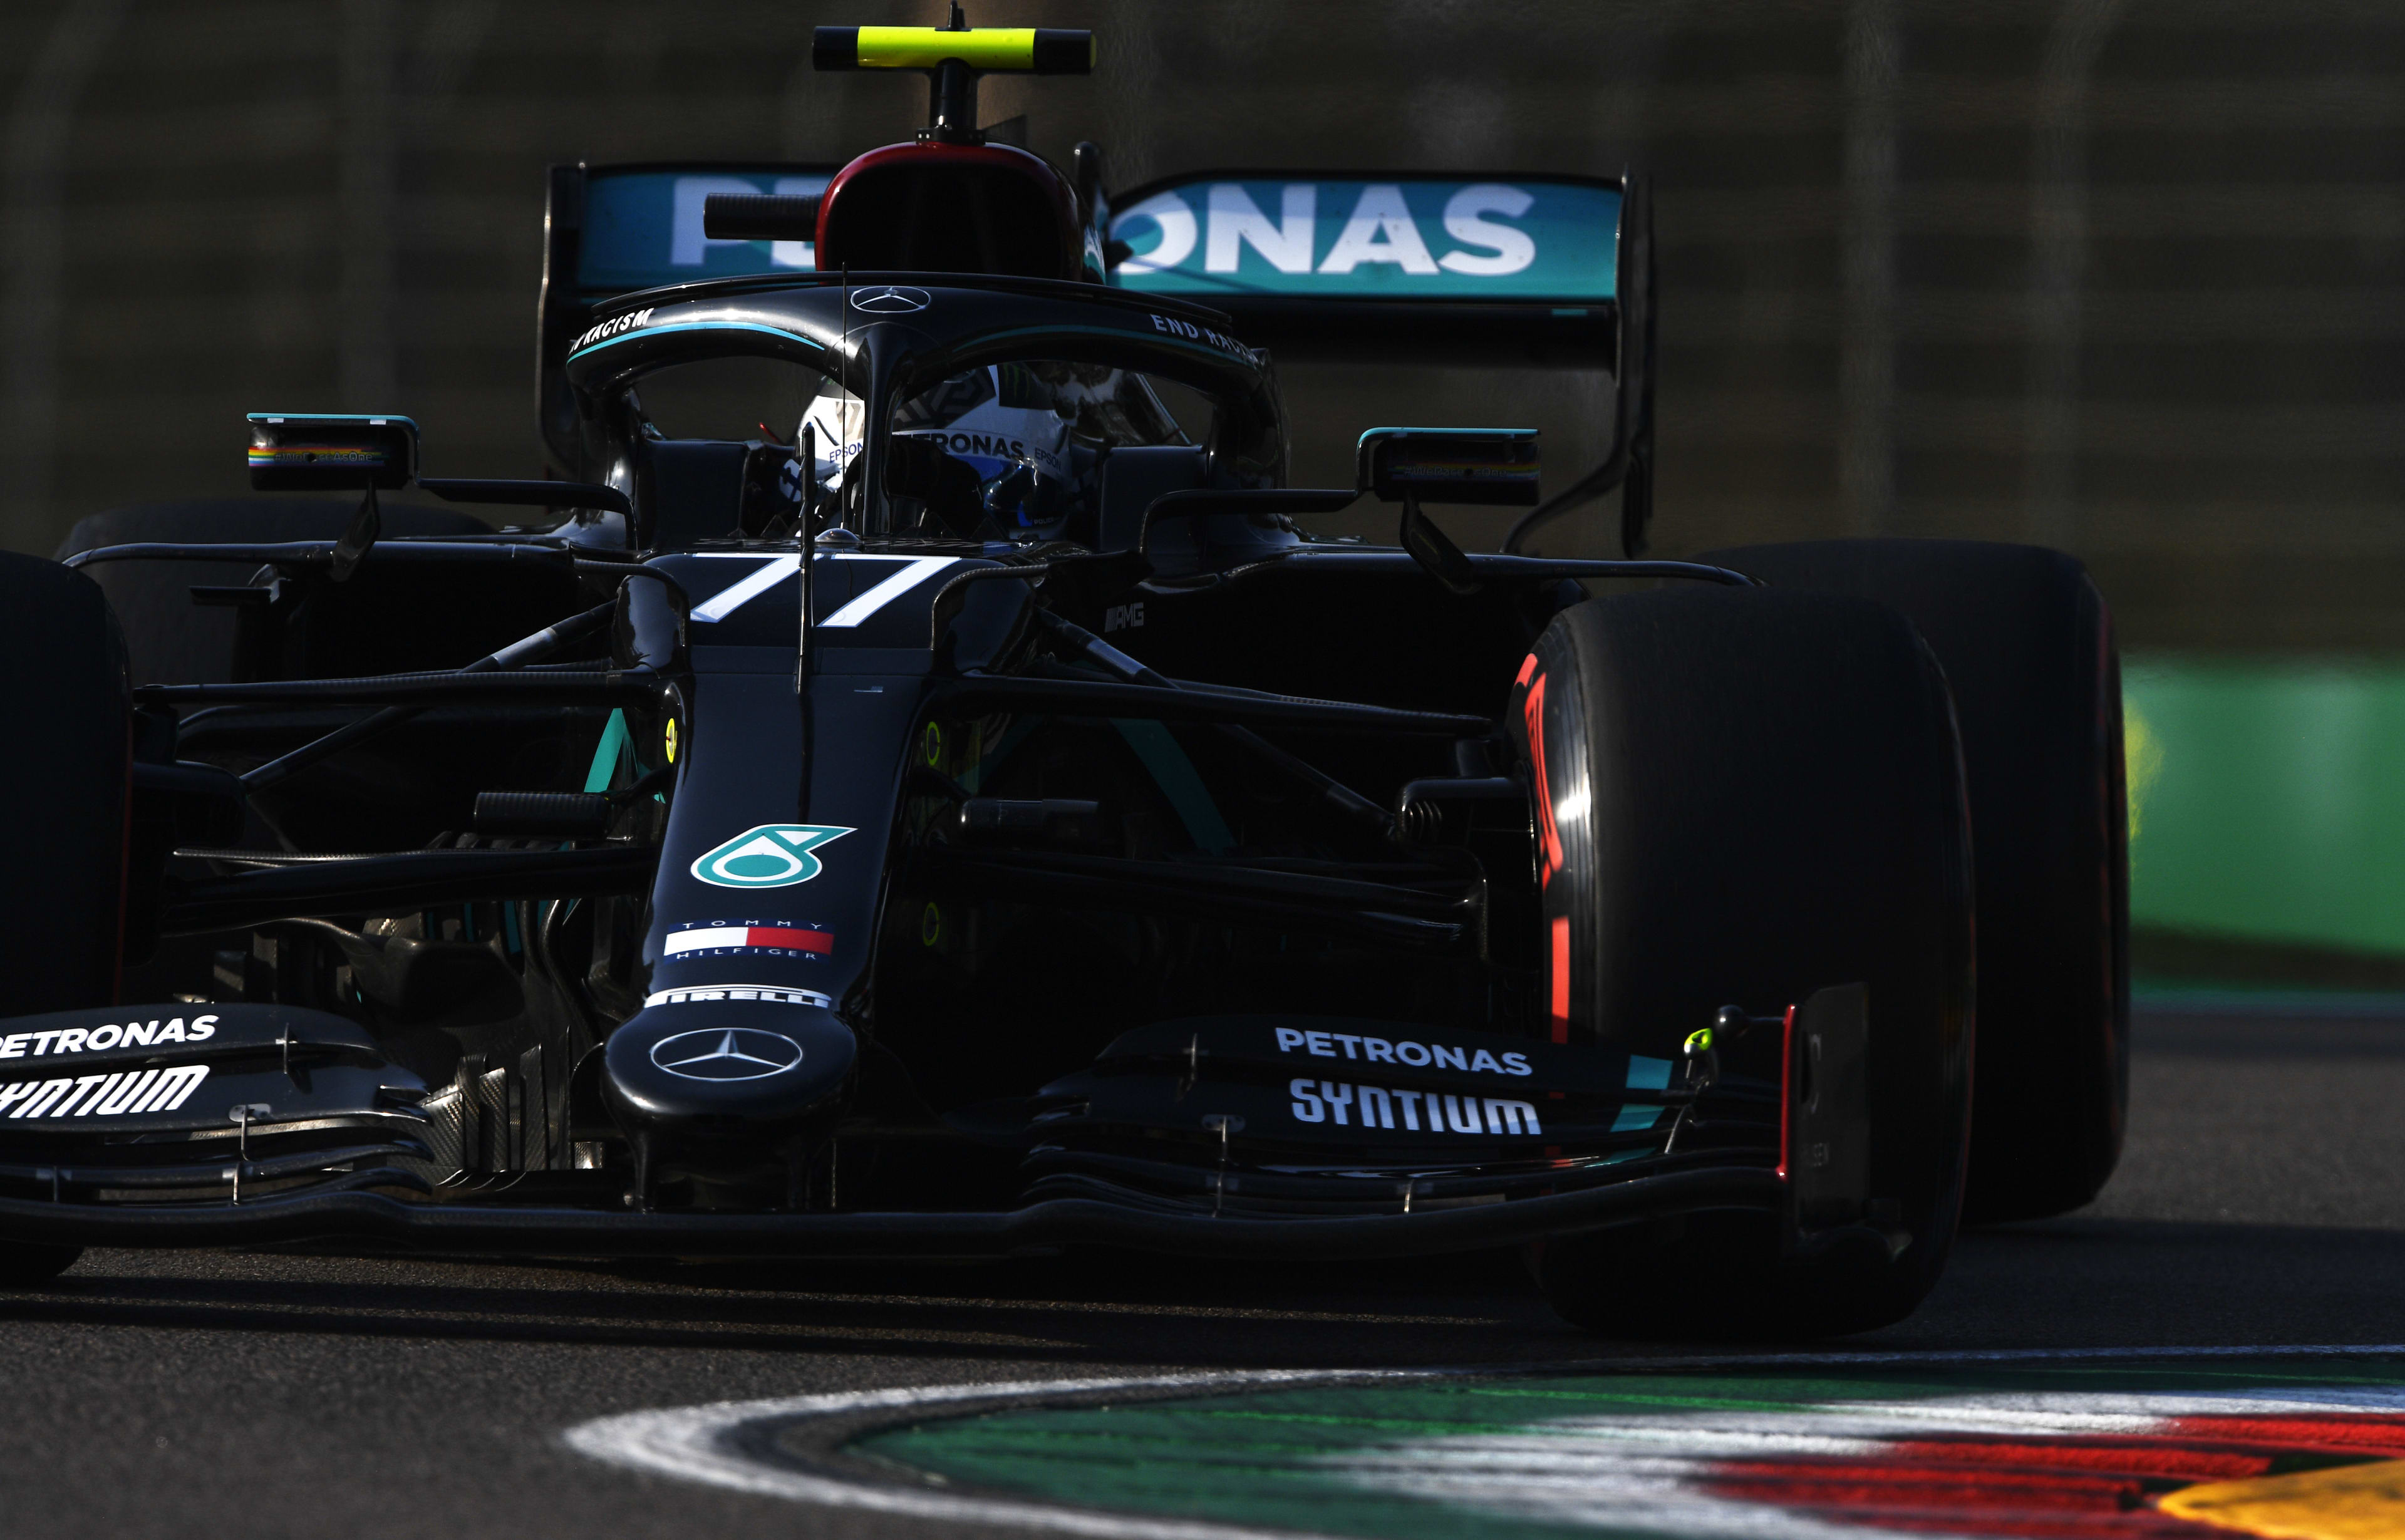 2020 Emilia Romagna Grand Prix qualifying report Bottas beats Hamilton to take pole at Imola as Verstappen survives Q2 scare to take 3rd Formula 1®